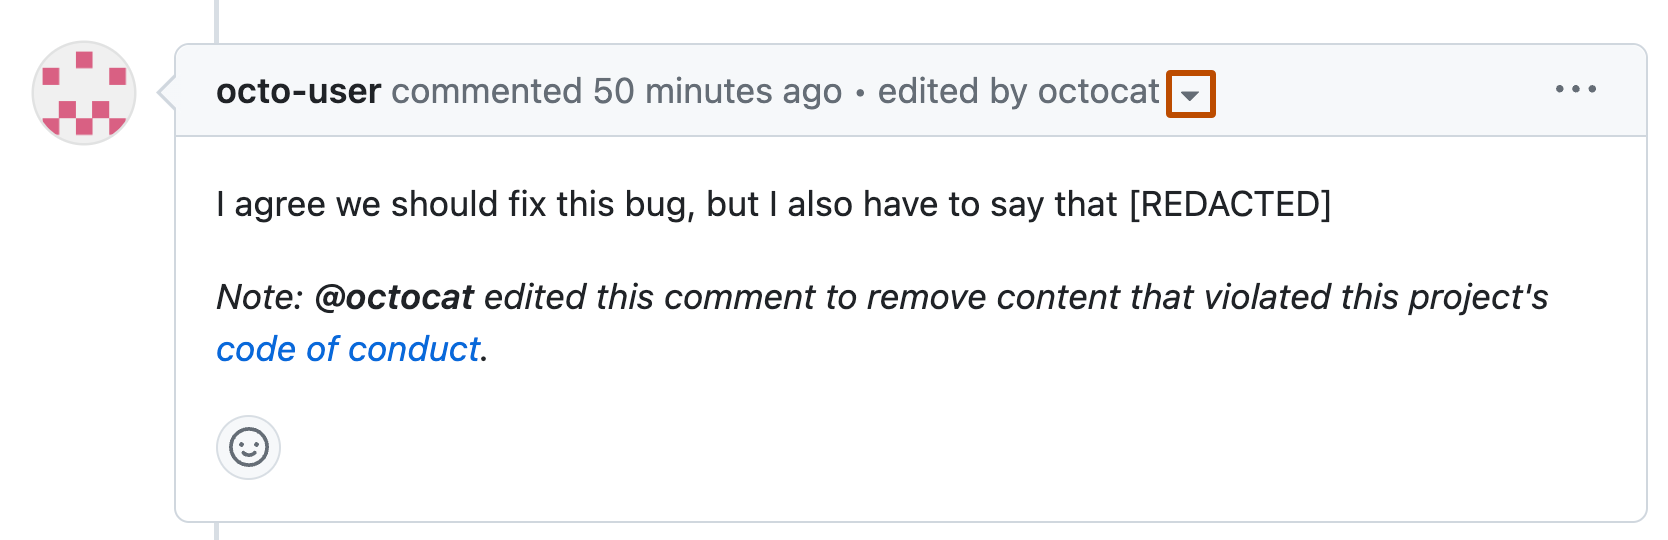 Captura de tela de um comentário de octo-user, que foi parcialmente editado. No cabeçalho do comentário, ao lado do texto "editado por octocat", um ícone suspenso está realçado em laranja.